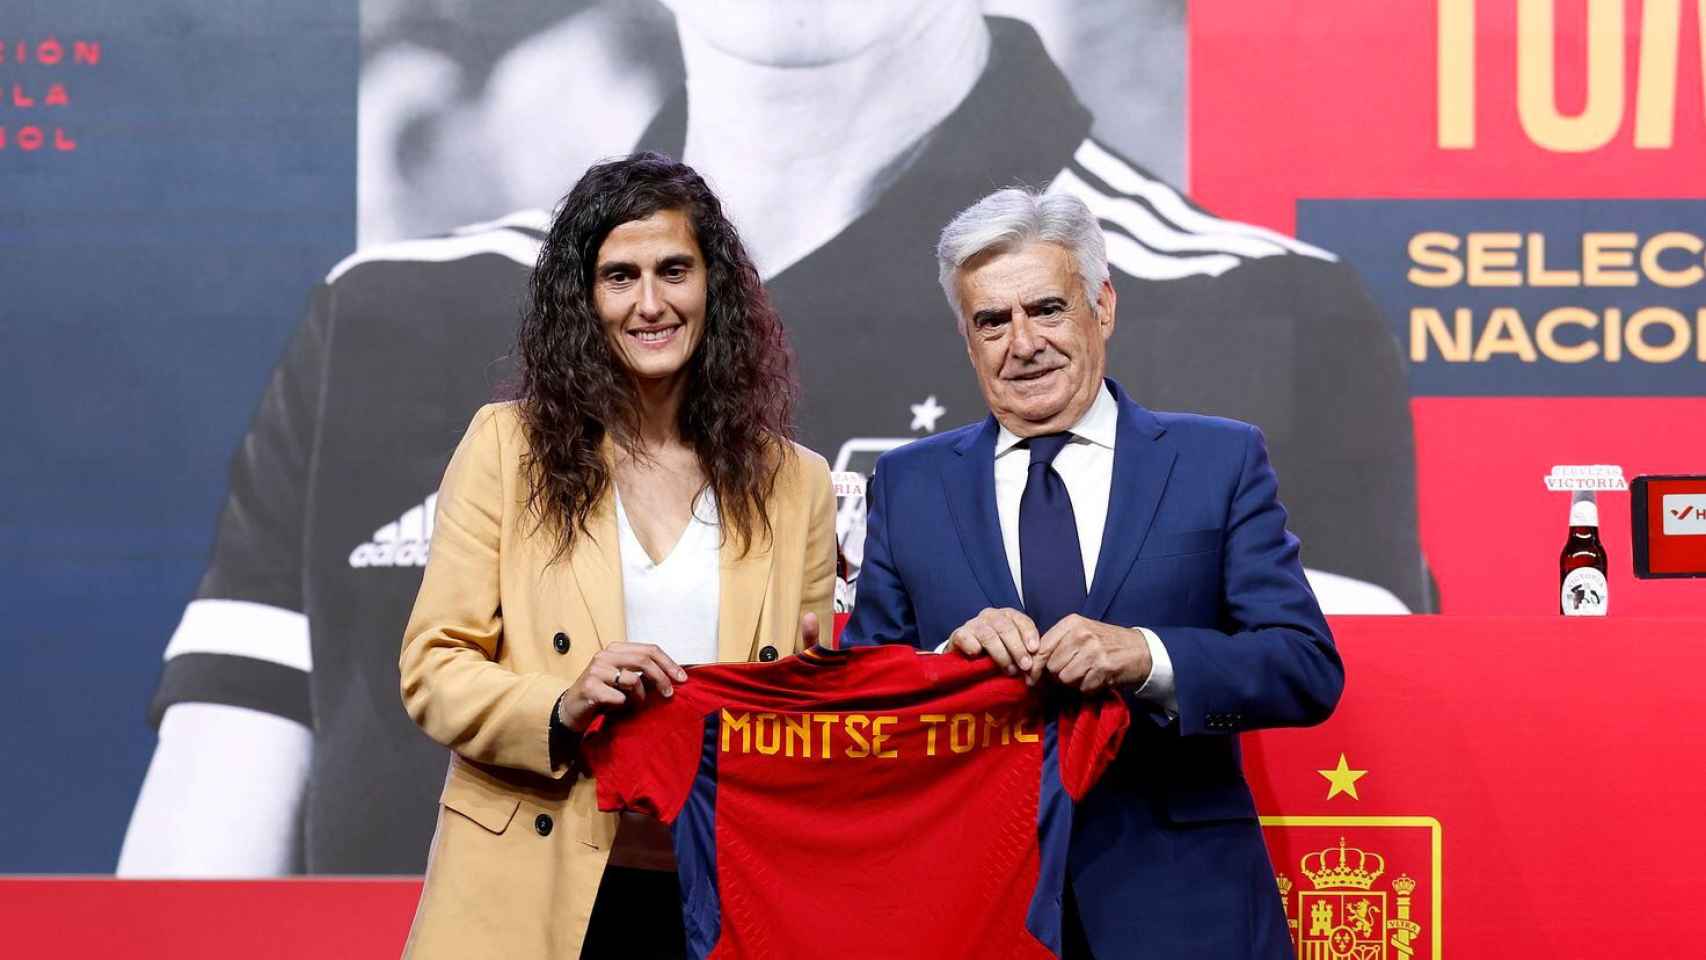 Montse Tomé, cuando fue anunciada como seleccionadora de España